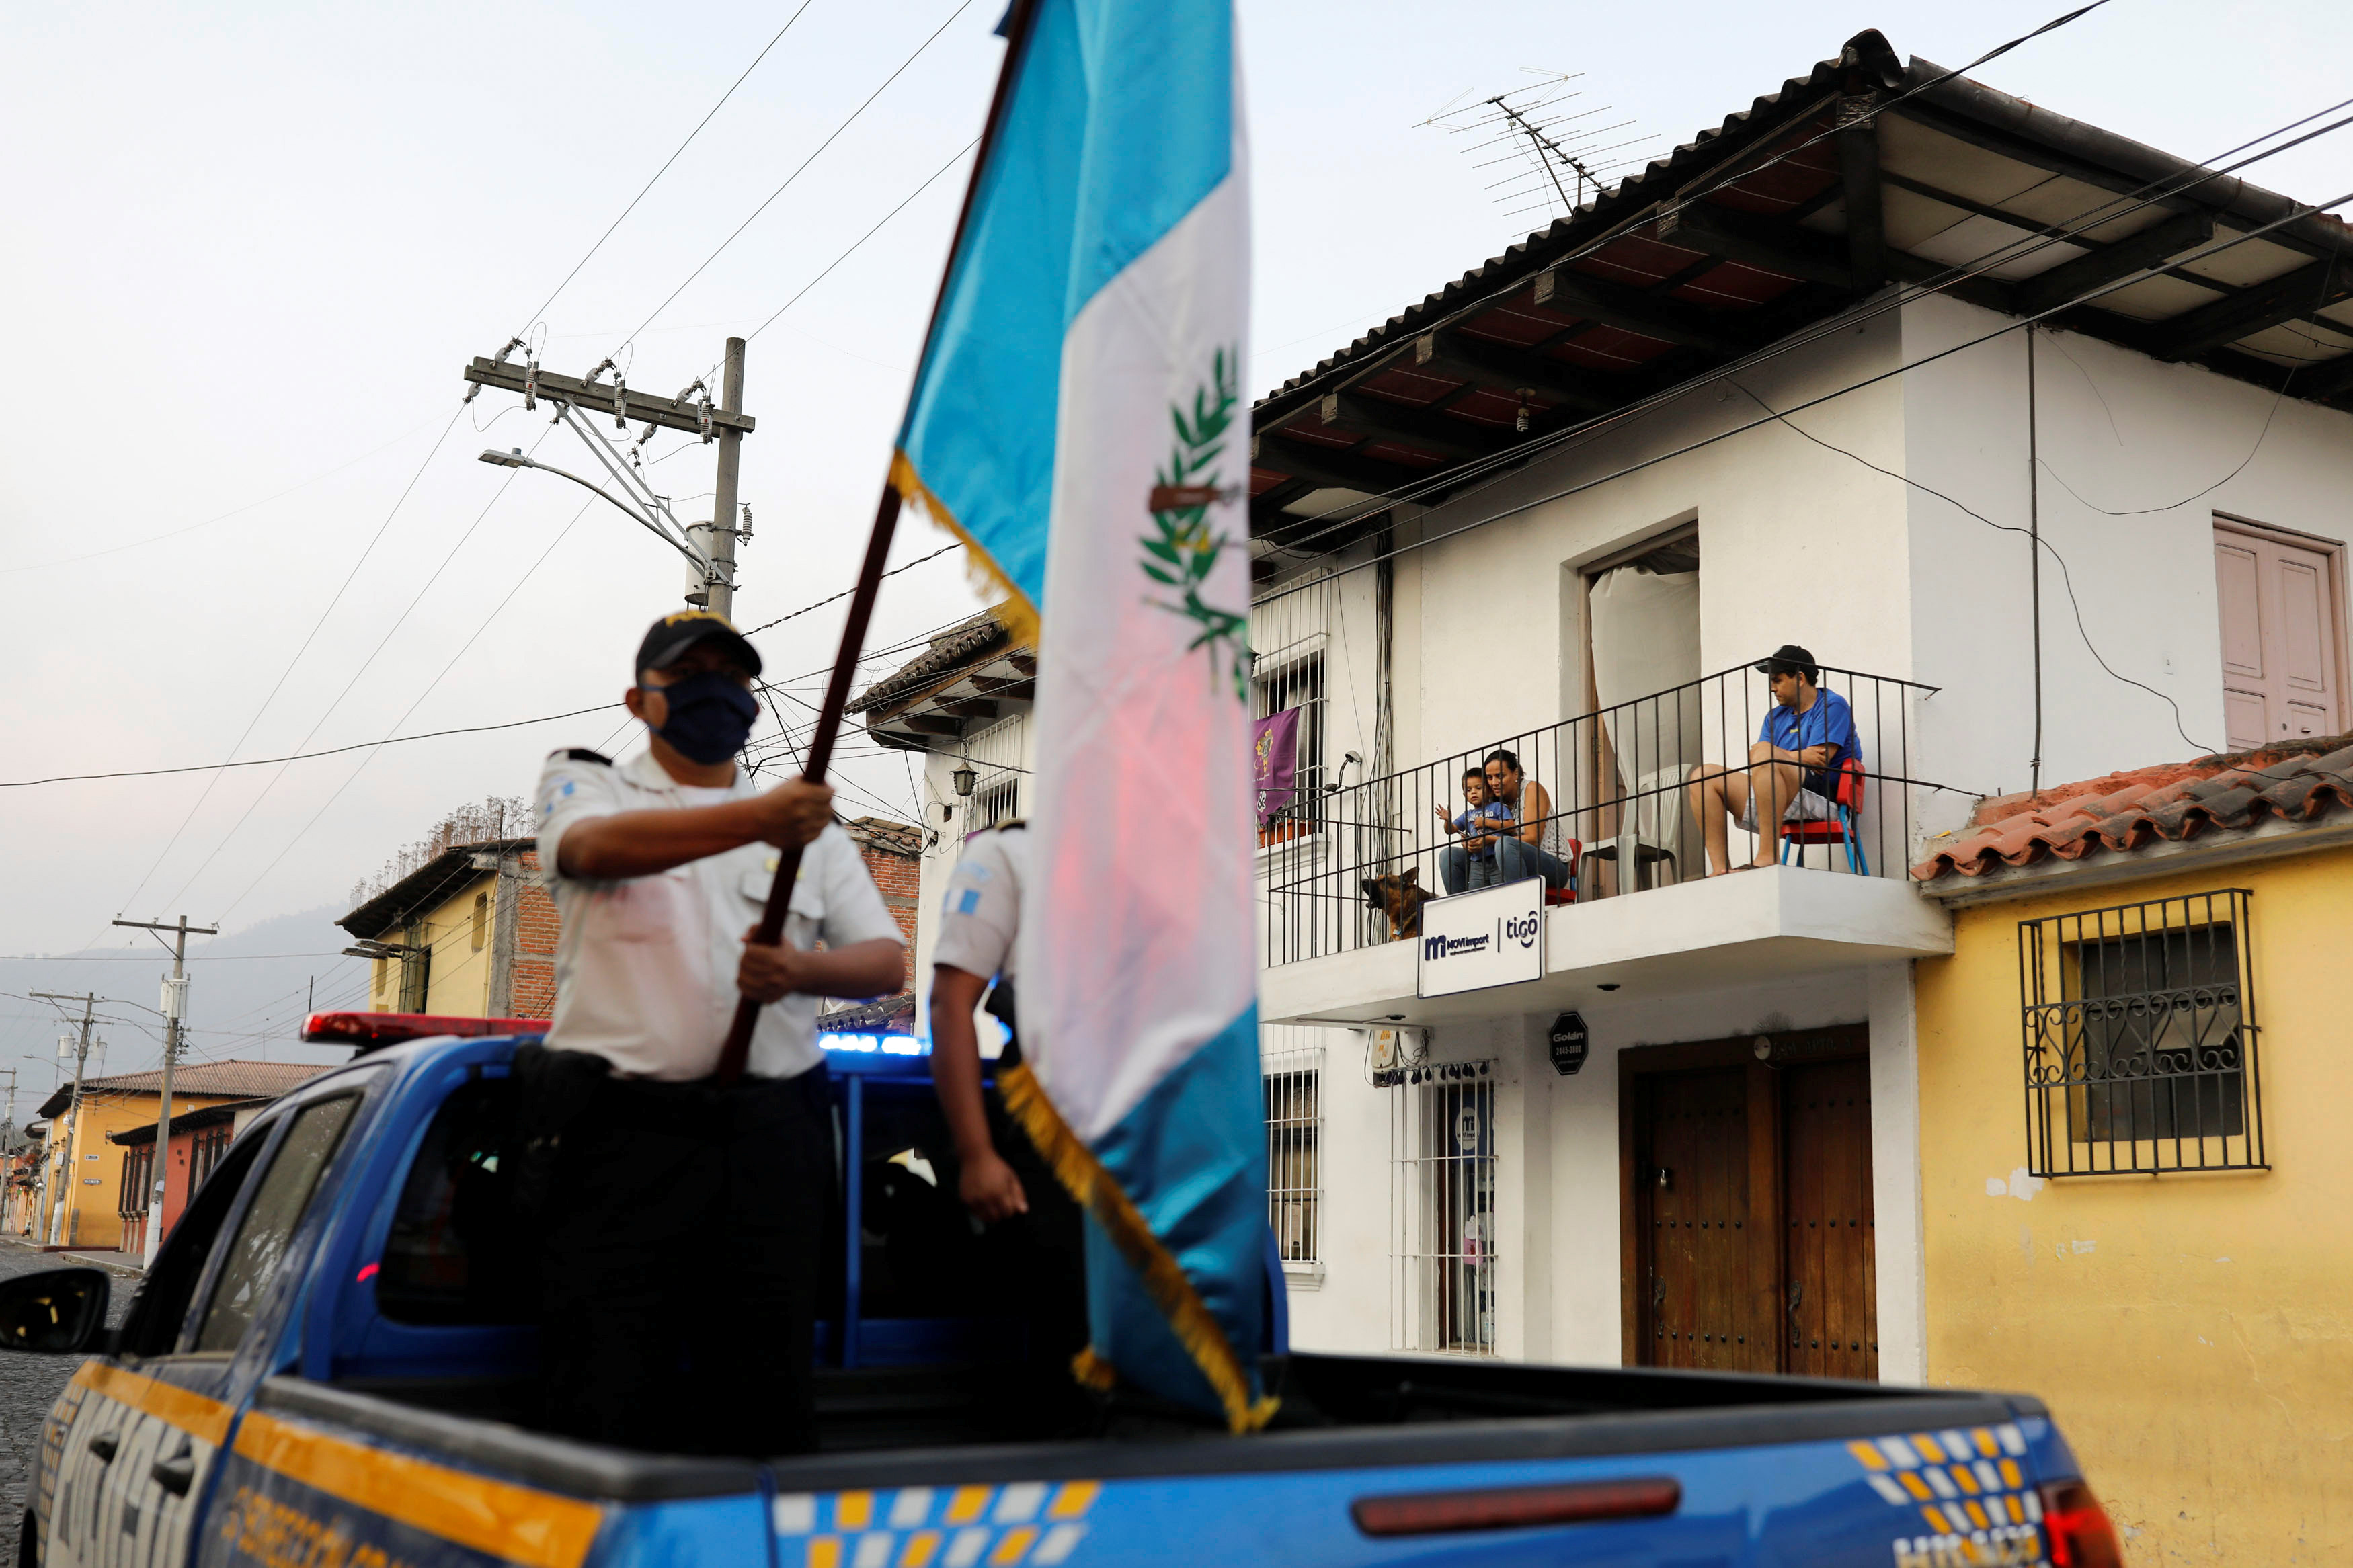 الفرقة الموسيقية التابعة للشرطة تقدم عروضا في الشارع في جواتيمالا سيتي  (5)